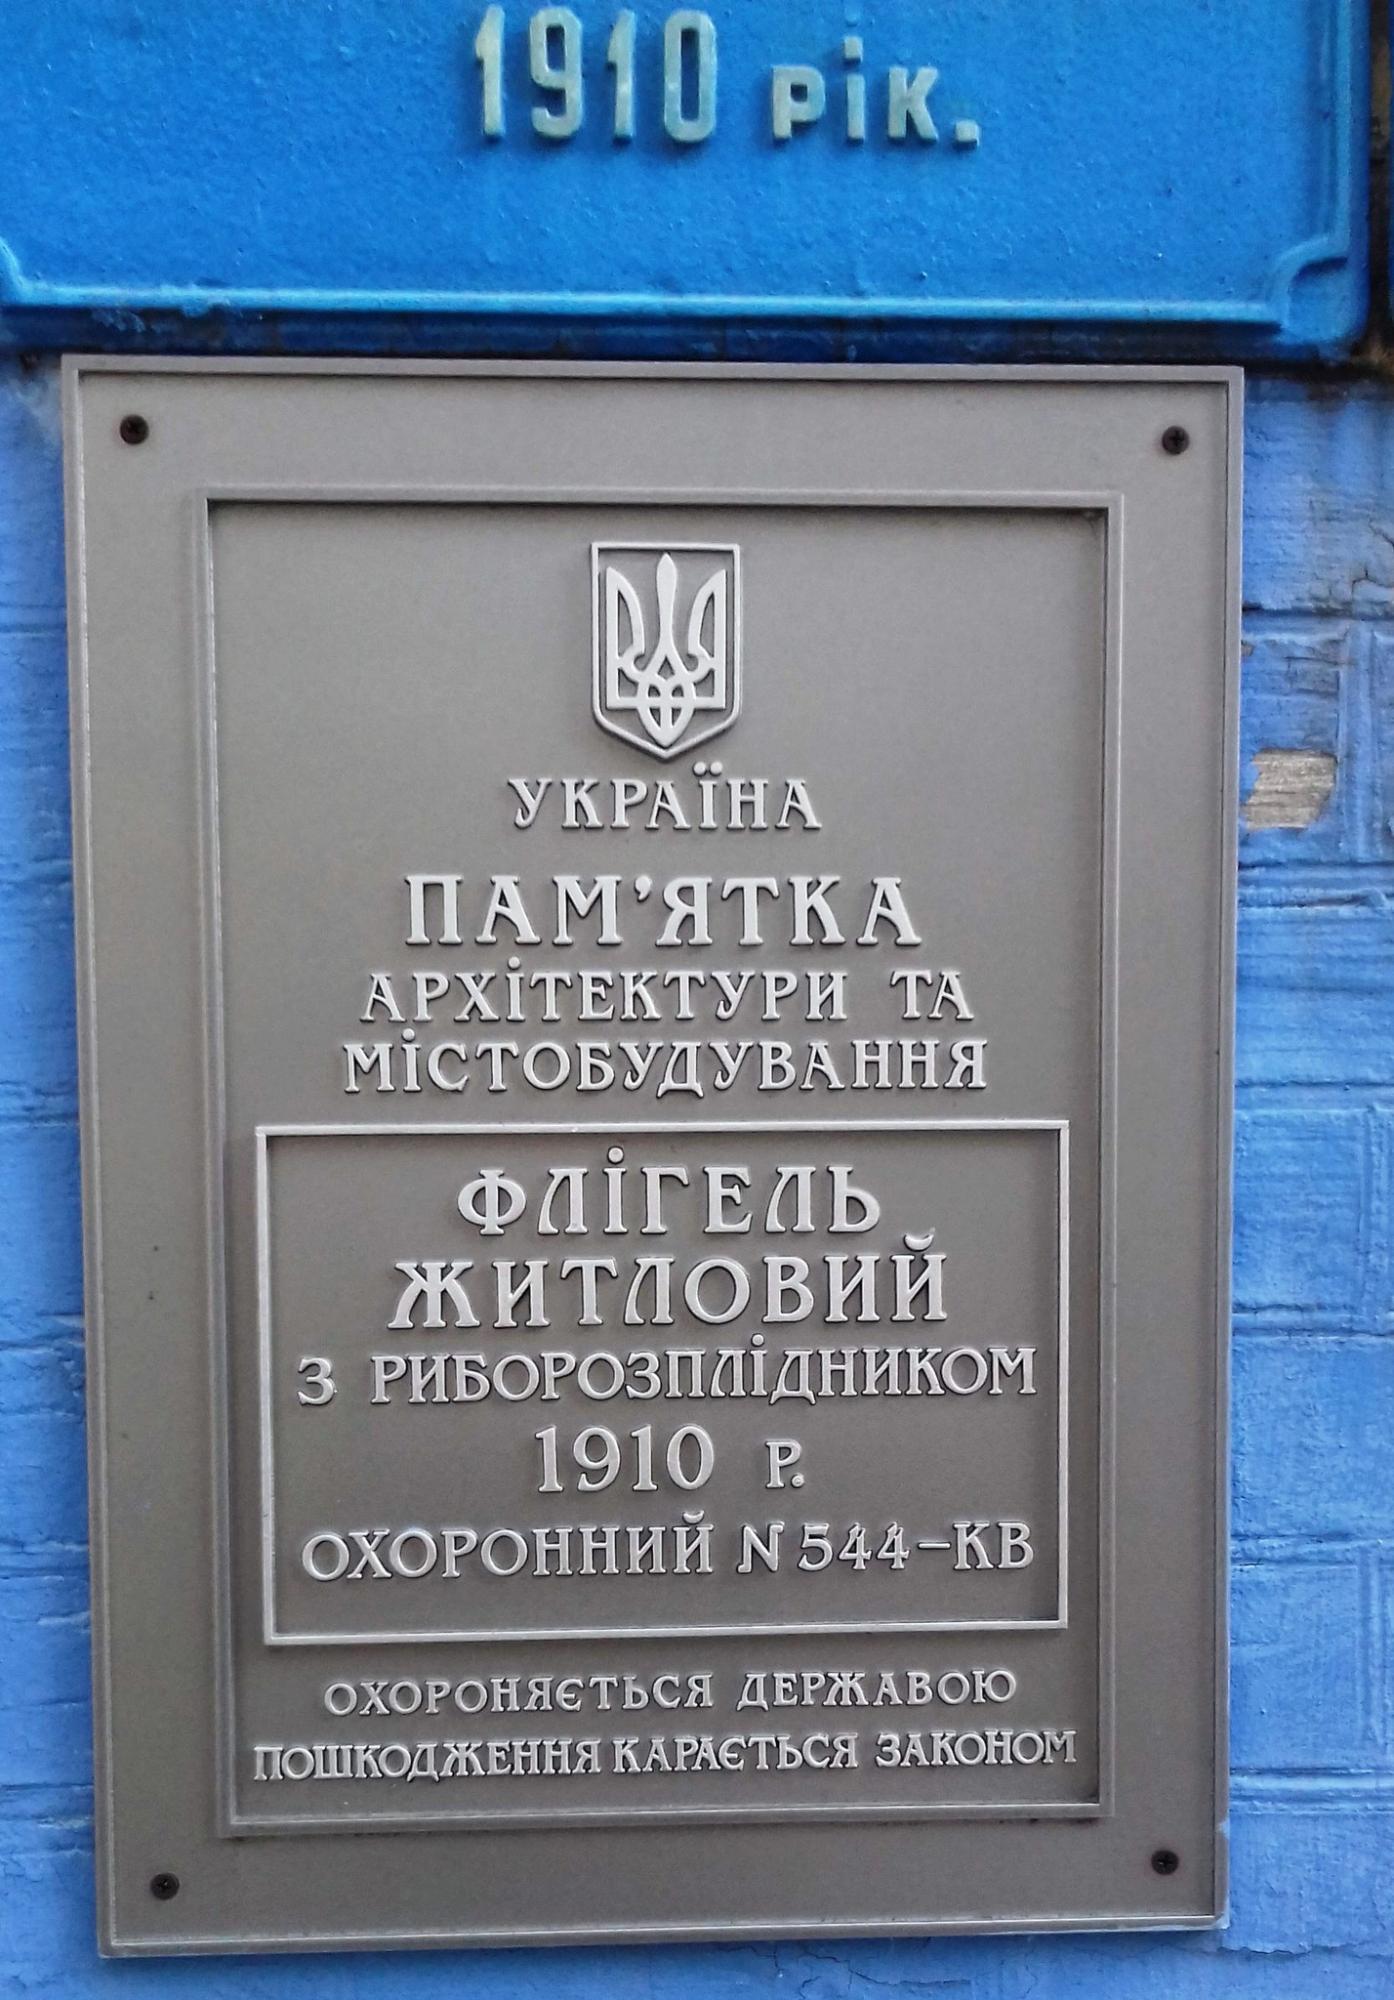 &quot;Секретна&quot; синя садиба у центрі Києва. Вона тут з 1910 року, але ви її навряд чи бачили